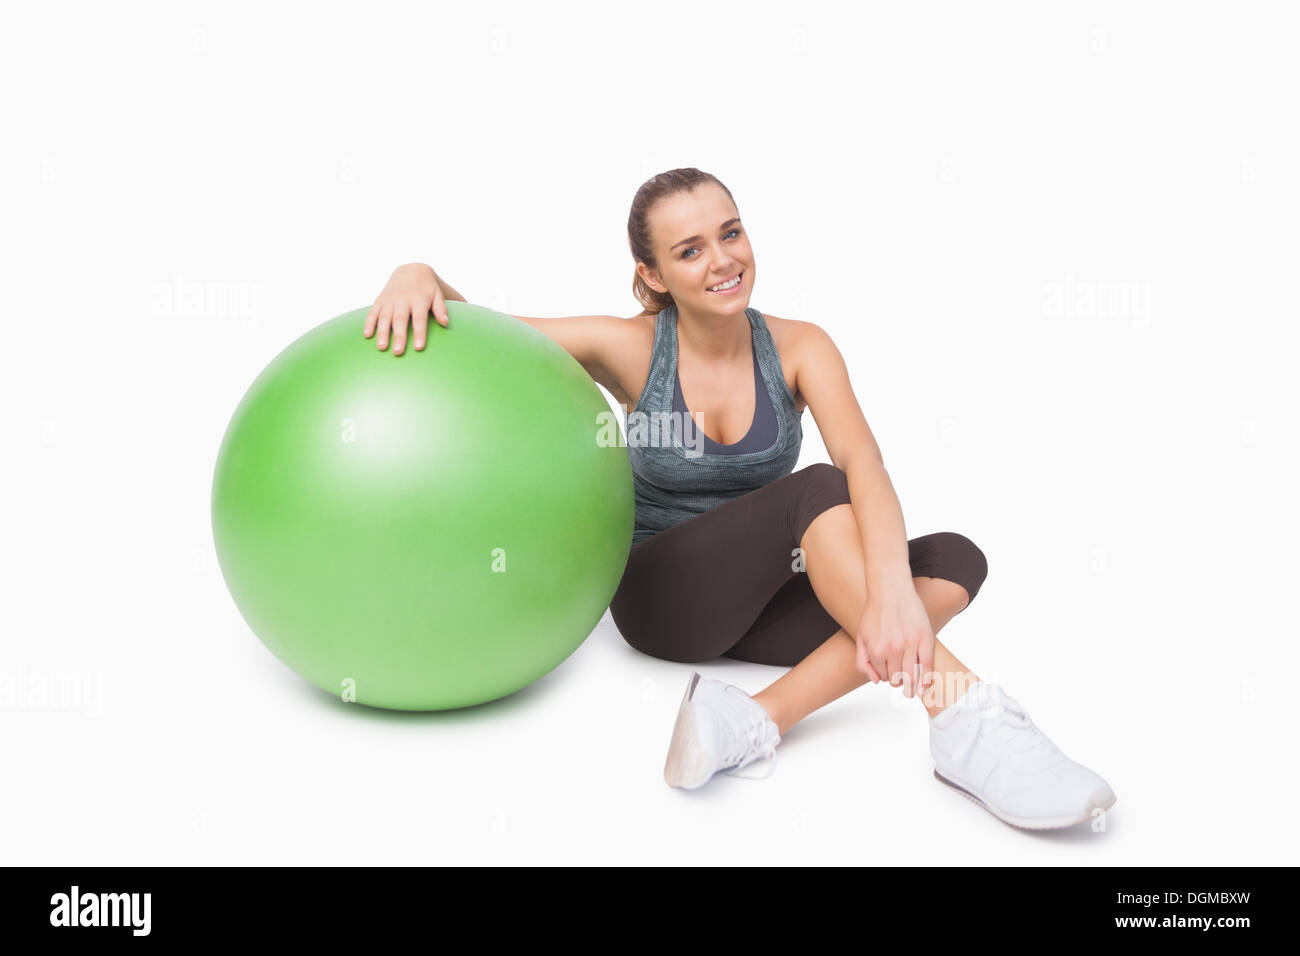 Carino donna seduta accanto a una sfera di fitness Foto Stock